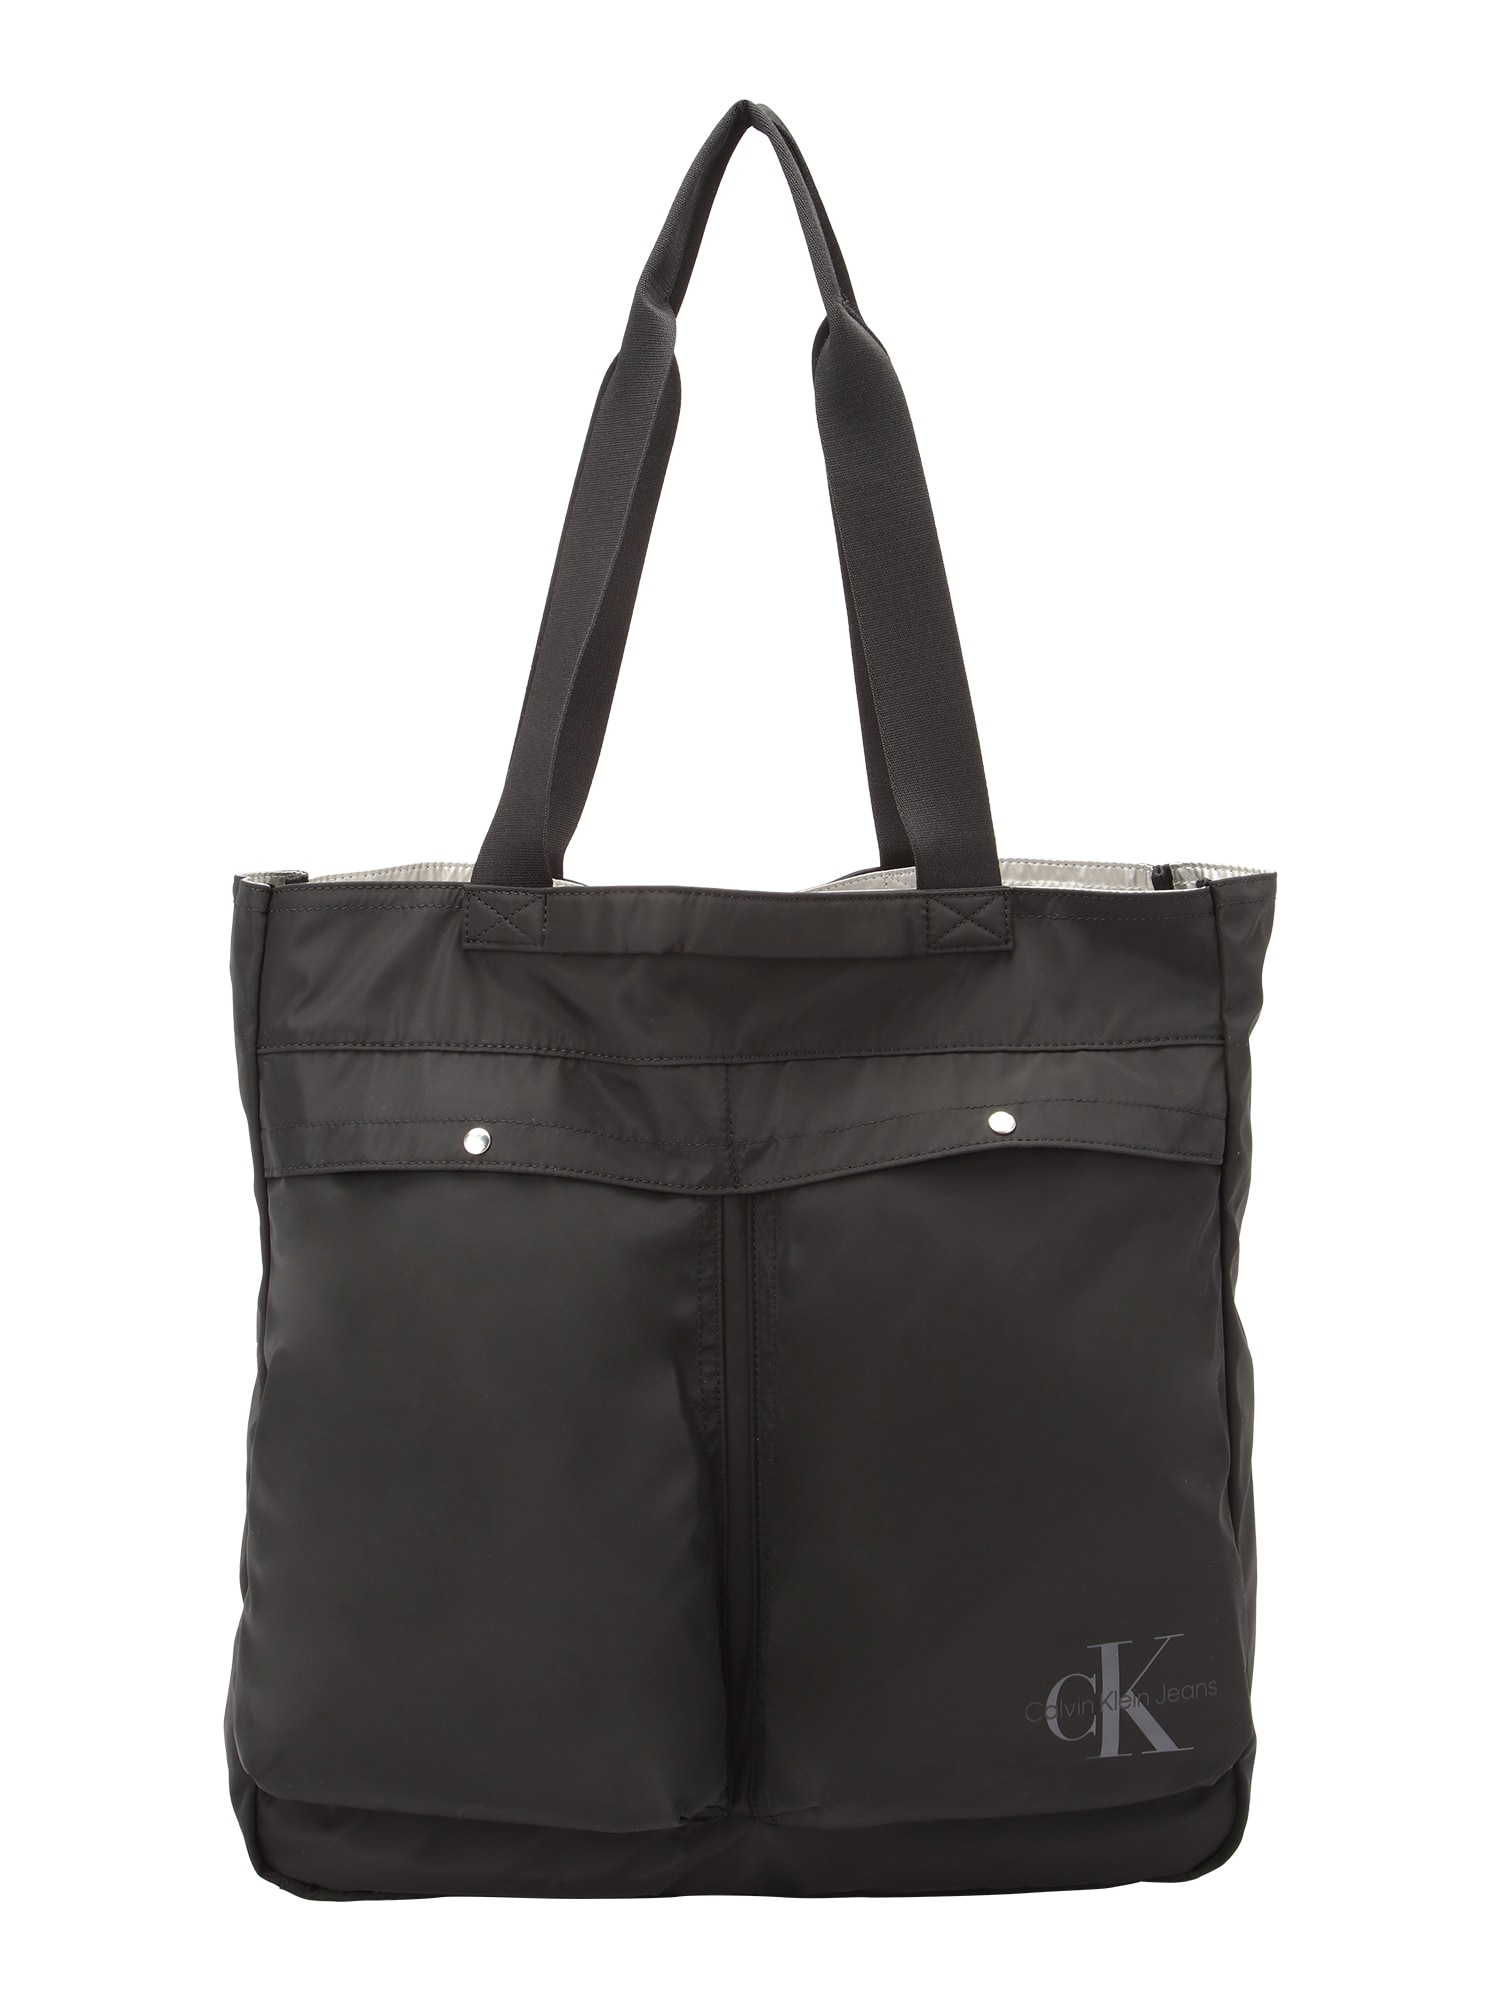 Calvin Klein Jeans Pirkinių krepšys juoda / sidabrinė